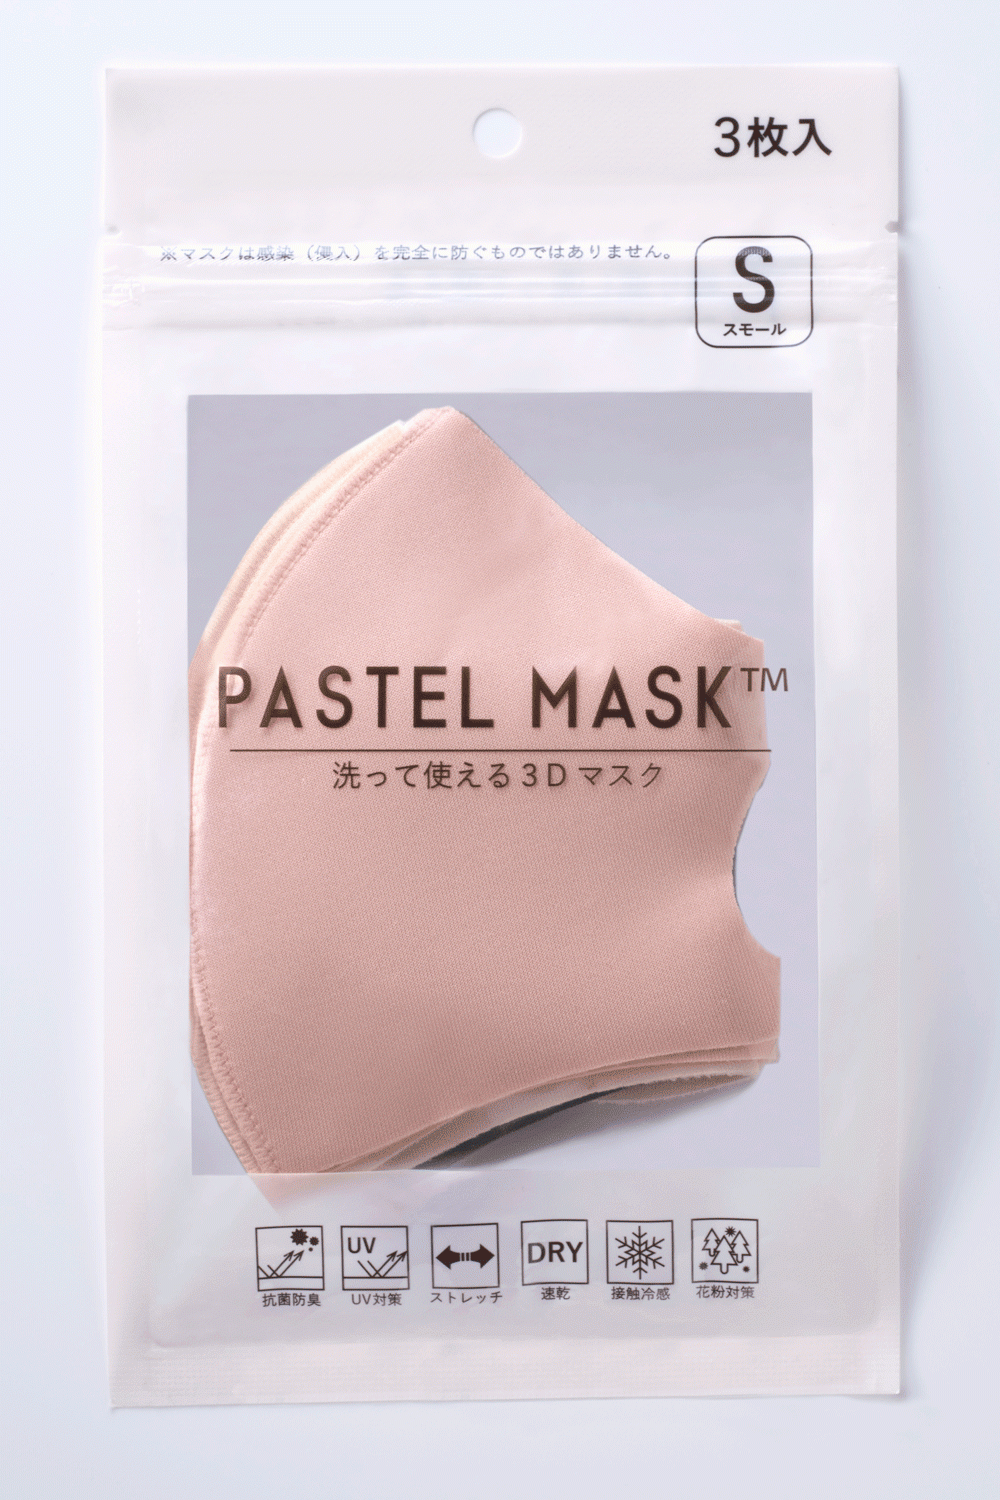 コロナ禍に発売5か月で累計販売4 000万枚突破 洗えるマスク Pastel Mask パステルマスク 豊富なカラーとサイズ ３d構造の快適さで大ヒット クロスプラス株式会社のプレスリリース